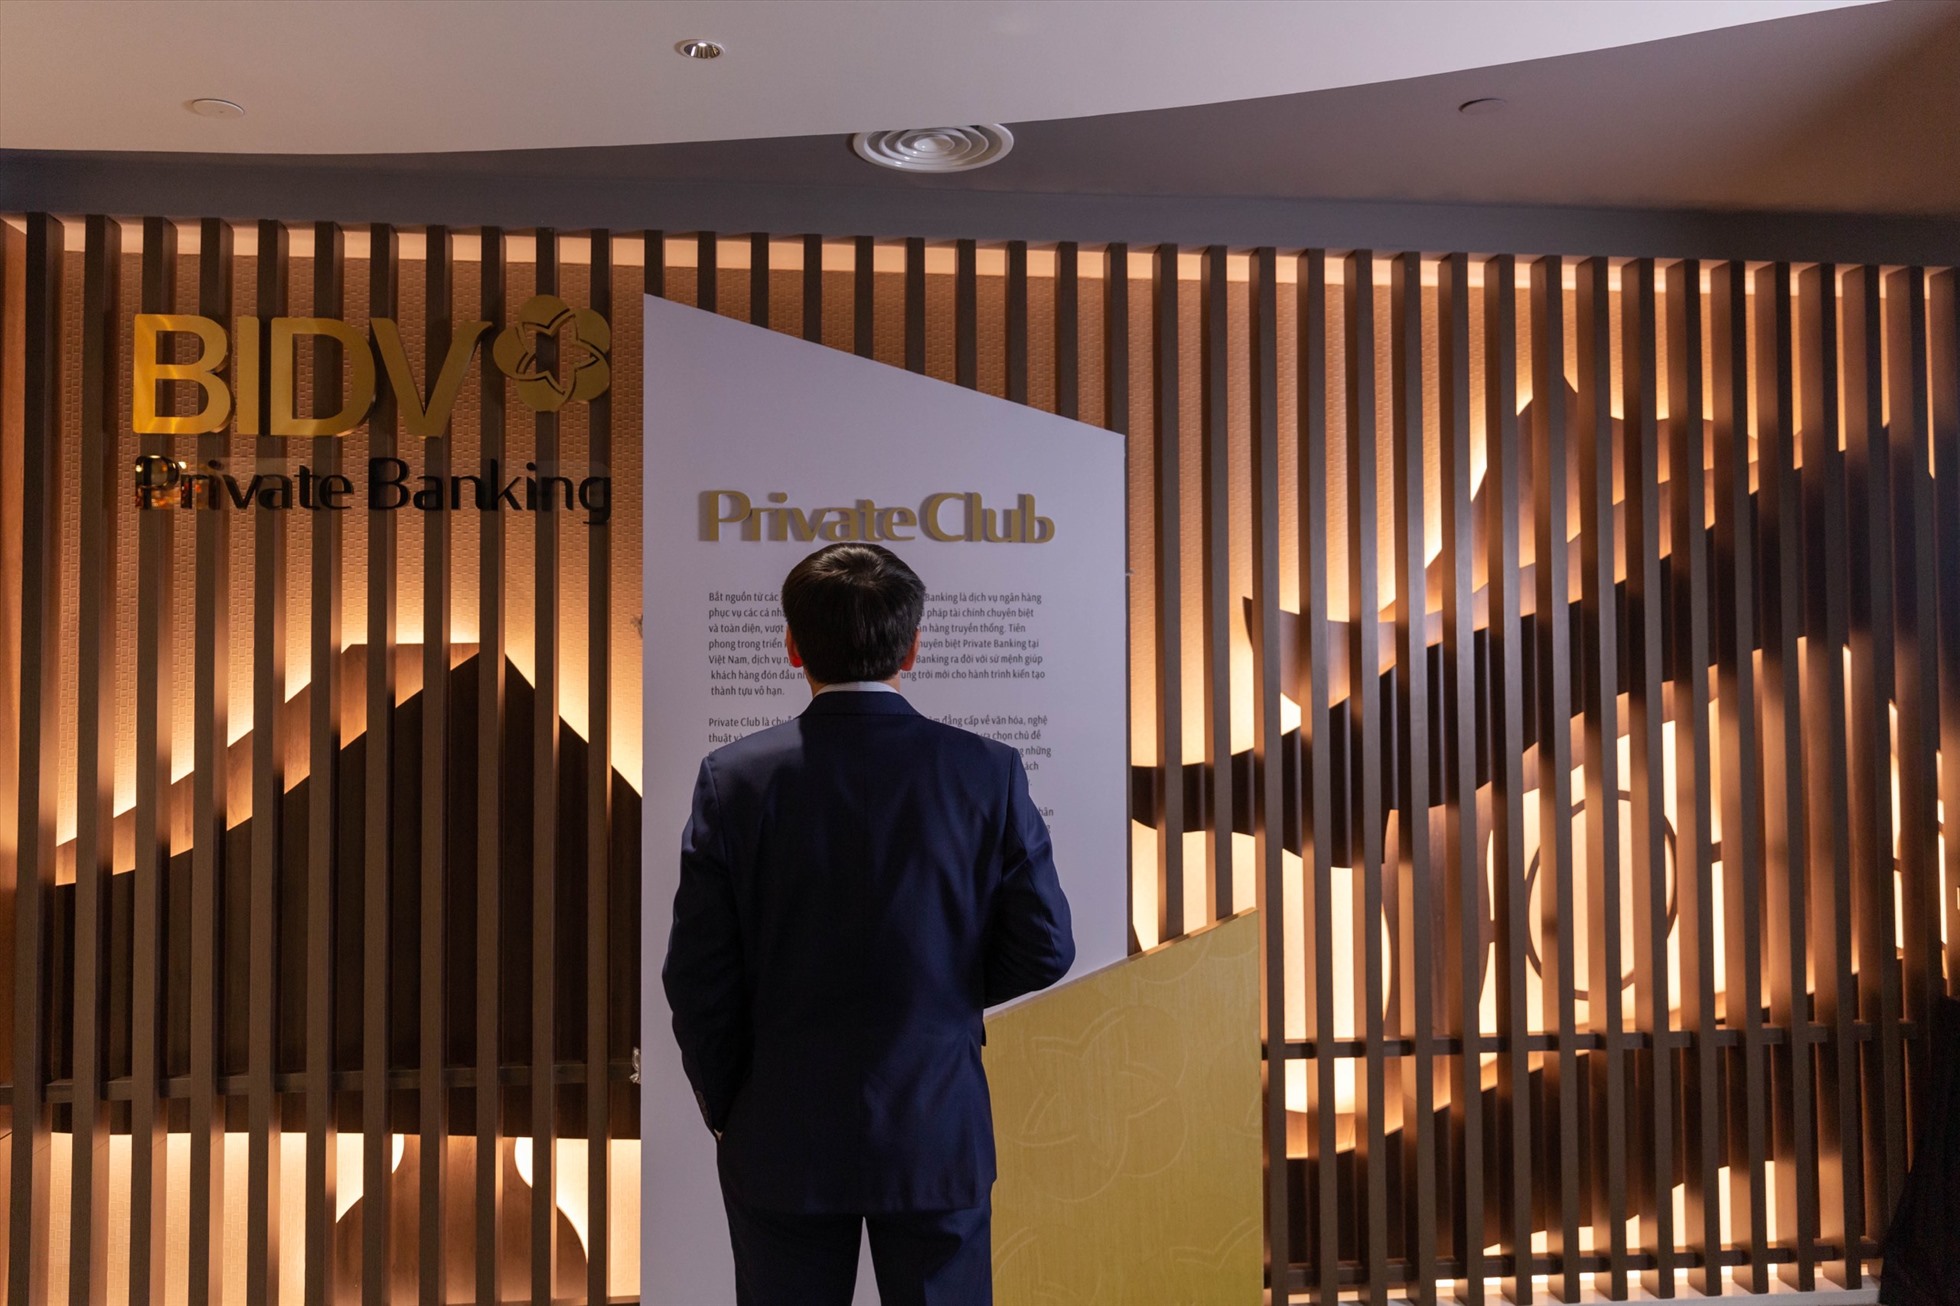 Private Club – Chuỗi sự kiện dành riêng cho các khách hàng BIDV Private Club